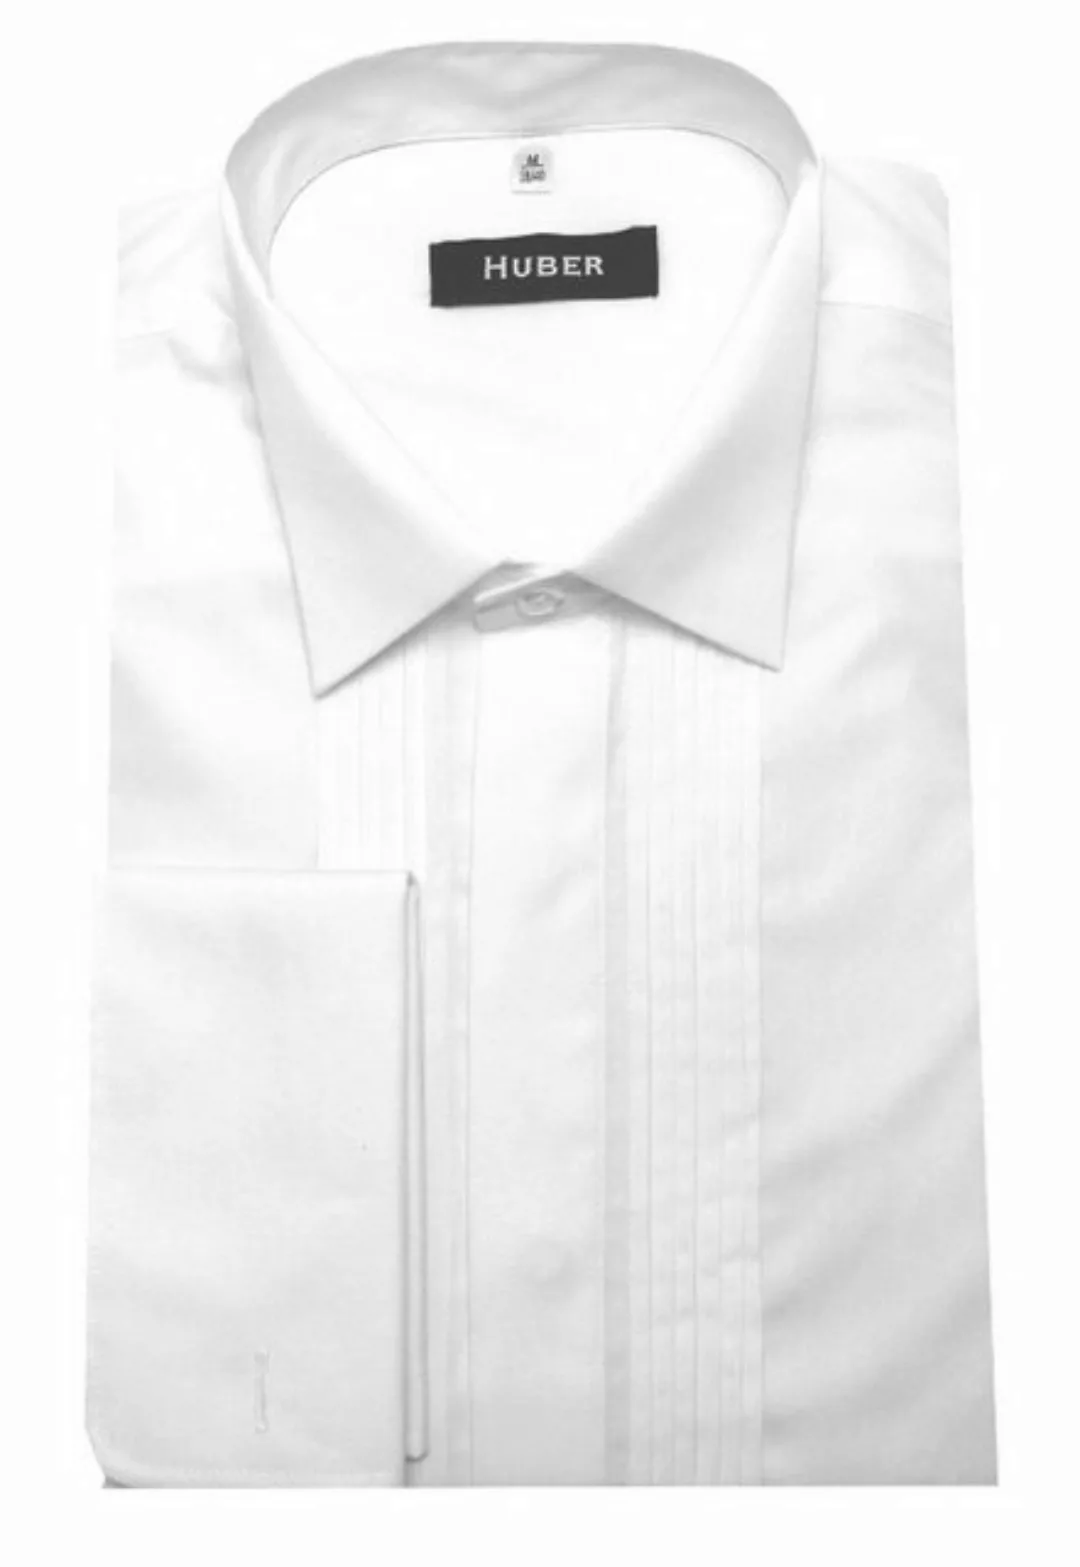 Huber Hemden Smokinghemd HU-0171 Kläppchen-Kragen, Plissee, Umschlag-Mansch günstig online kaufen